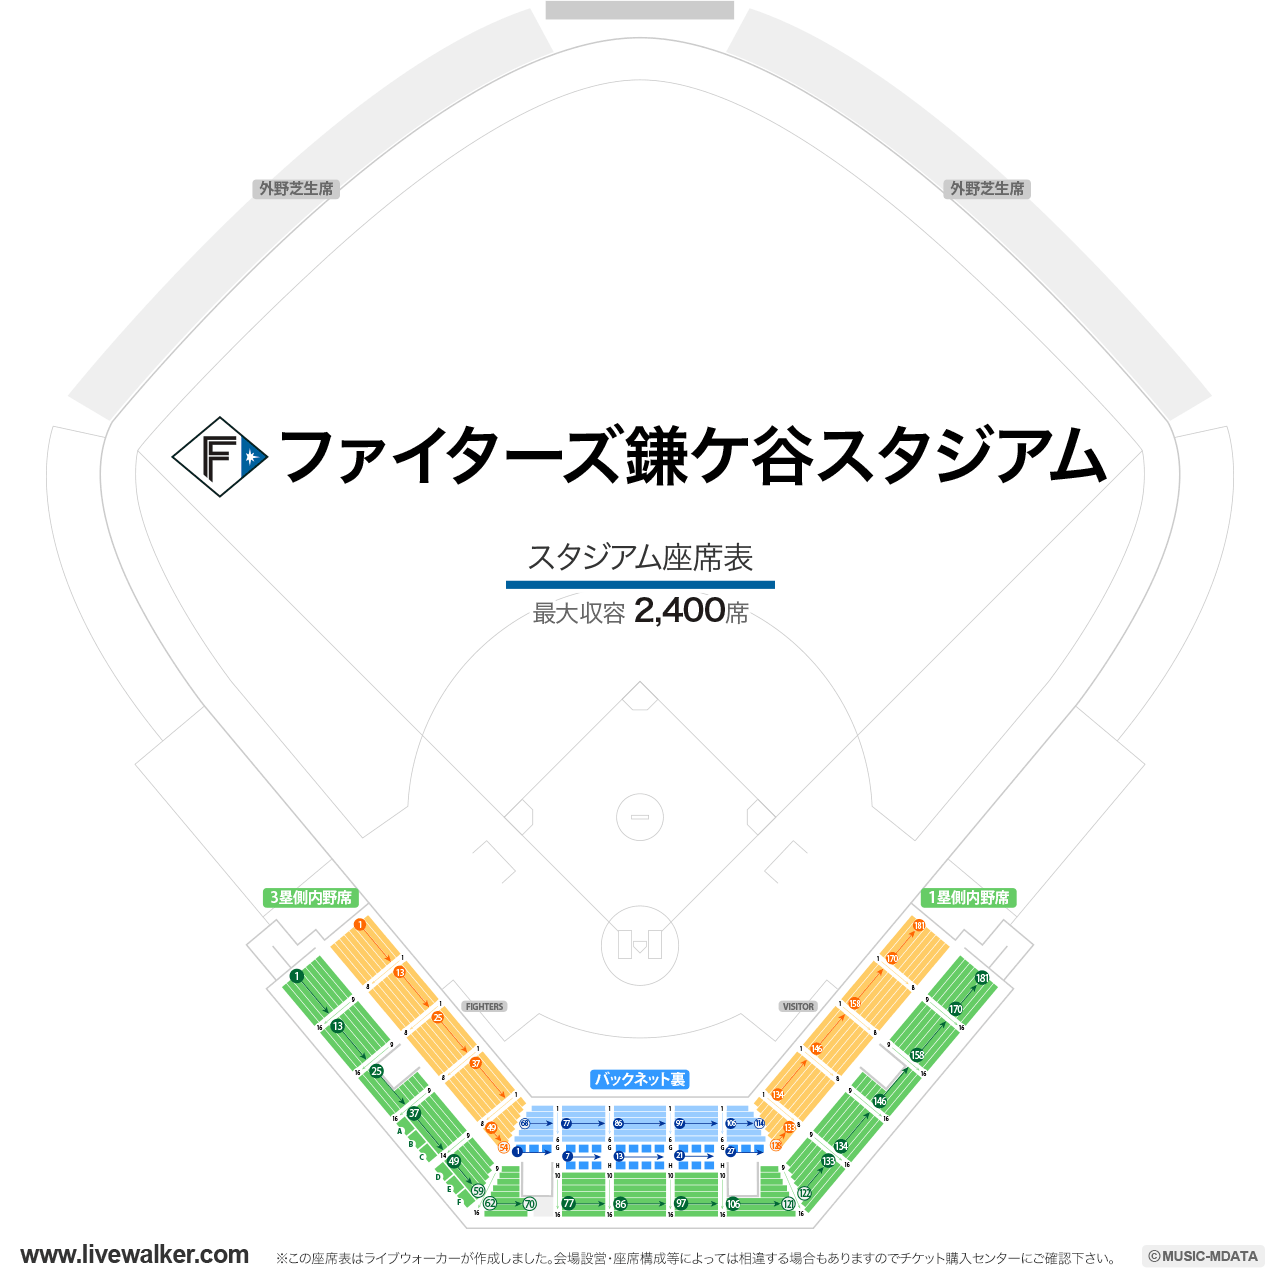 ファイターズ鎌ケ谷スタジアムの座席表